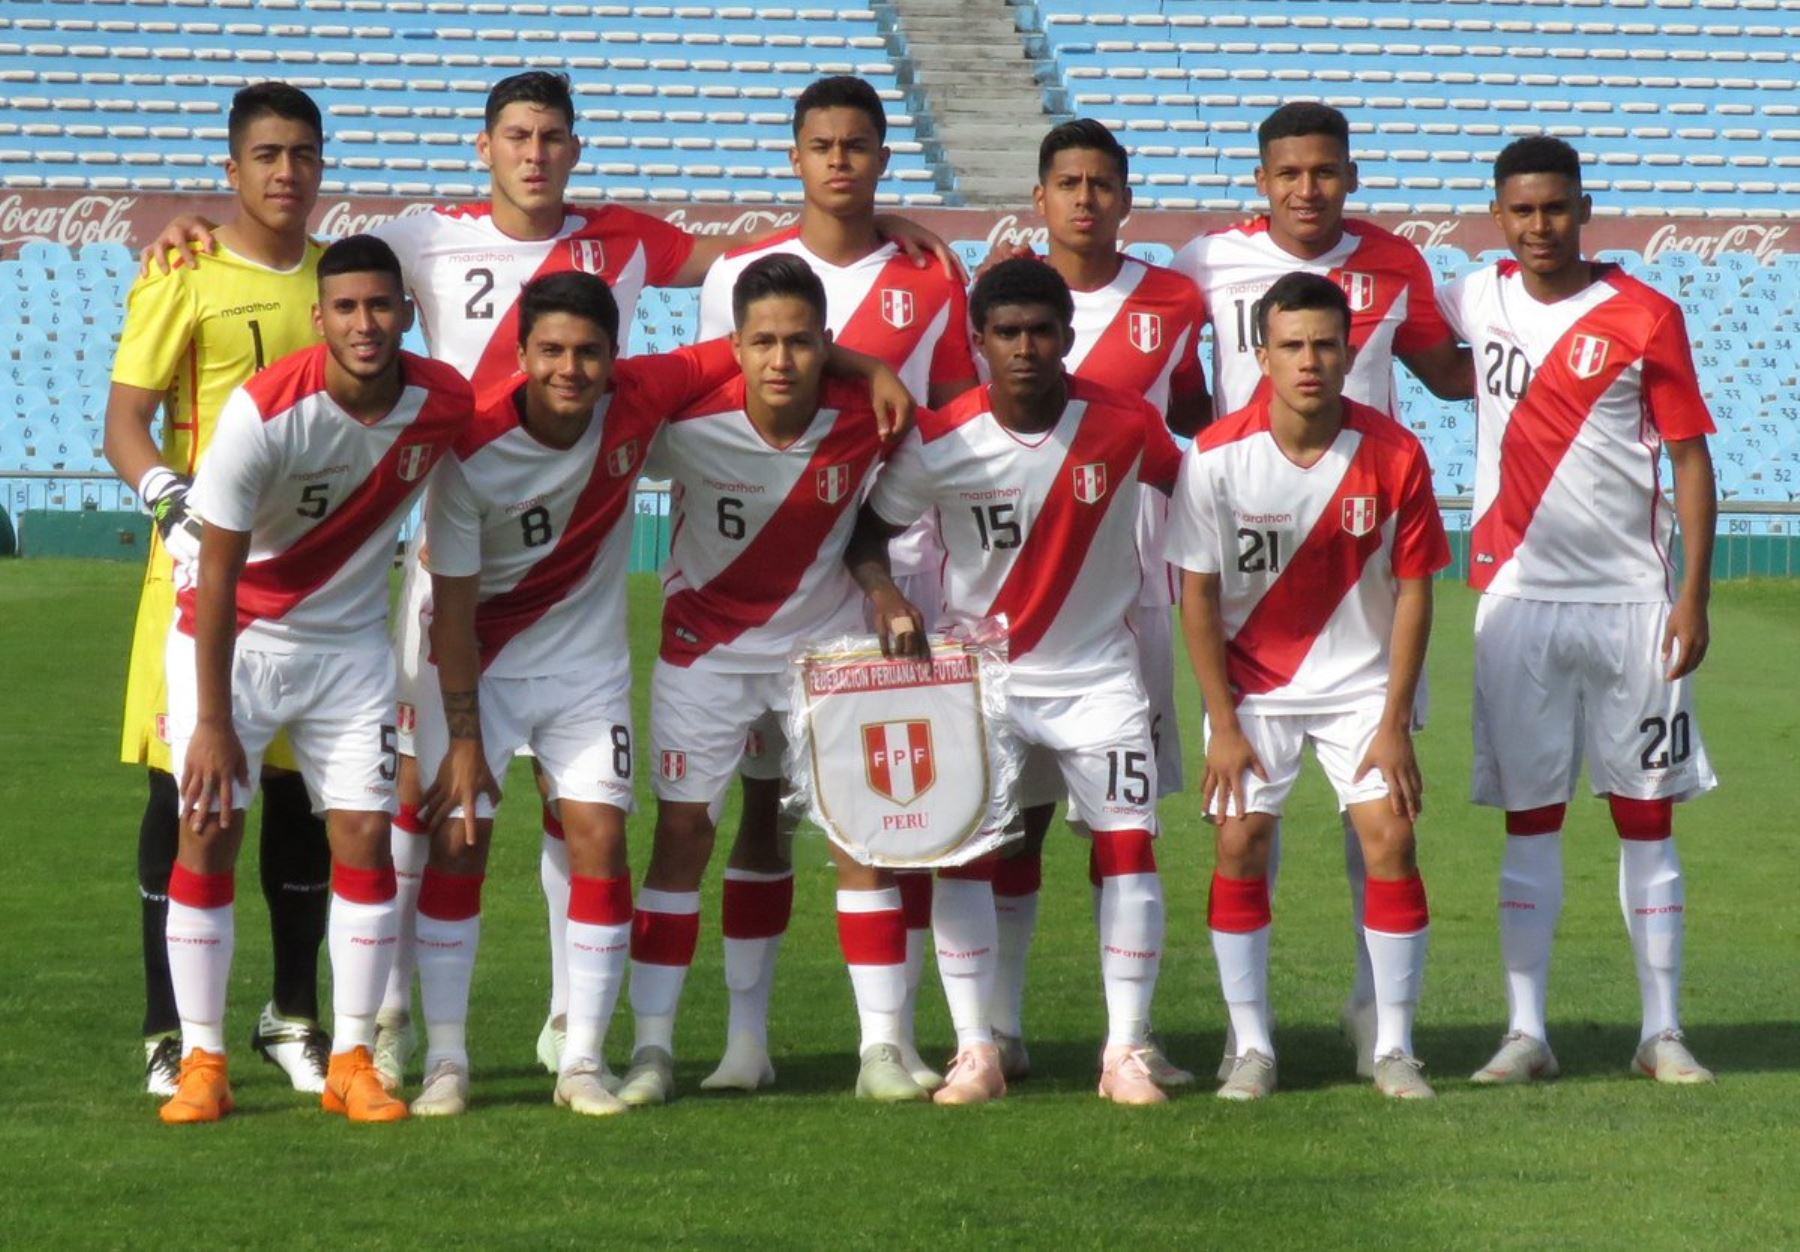 La selección peruana y su reto de brillar en el Sudamericano Sub-20